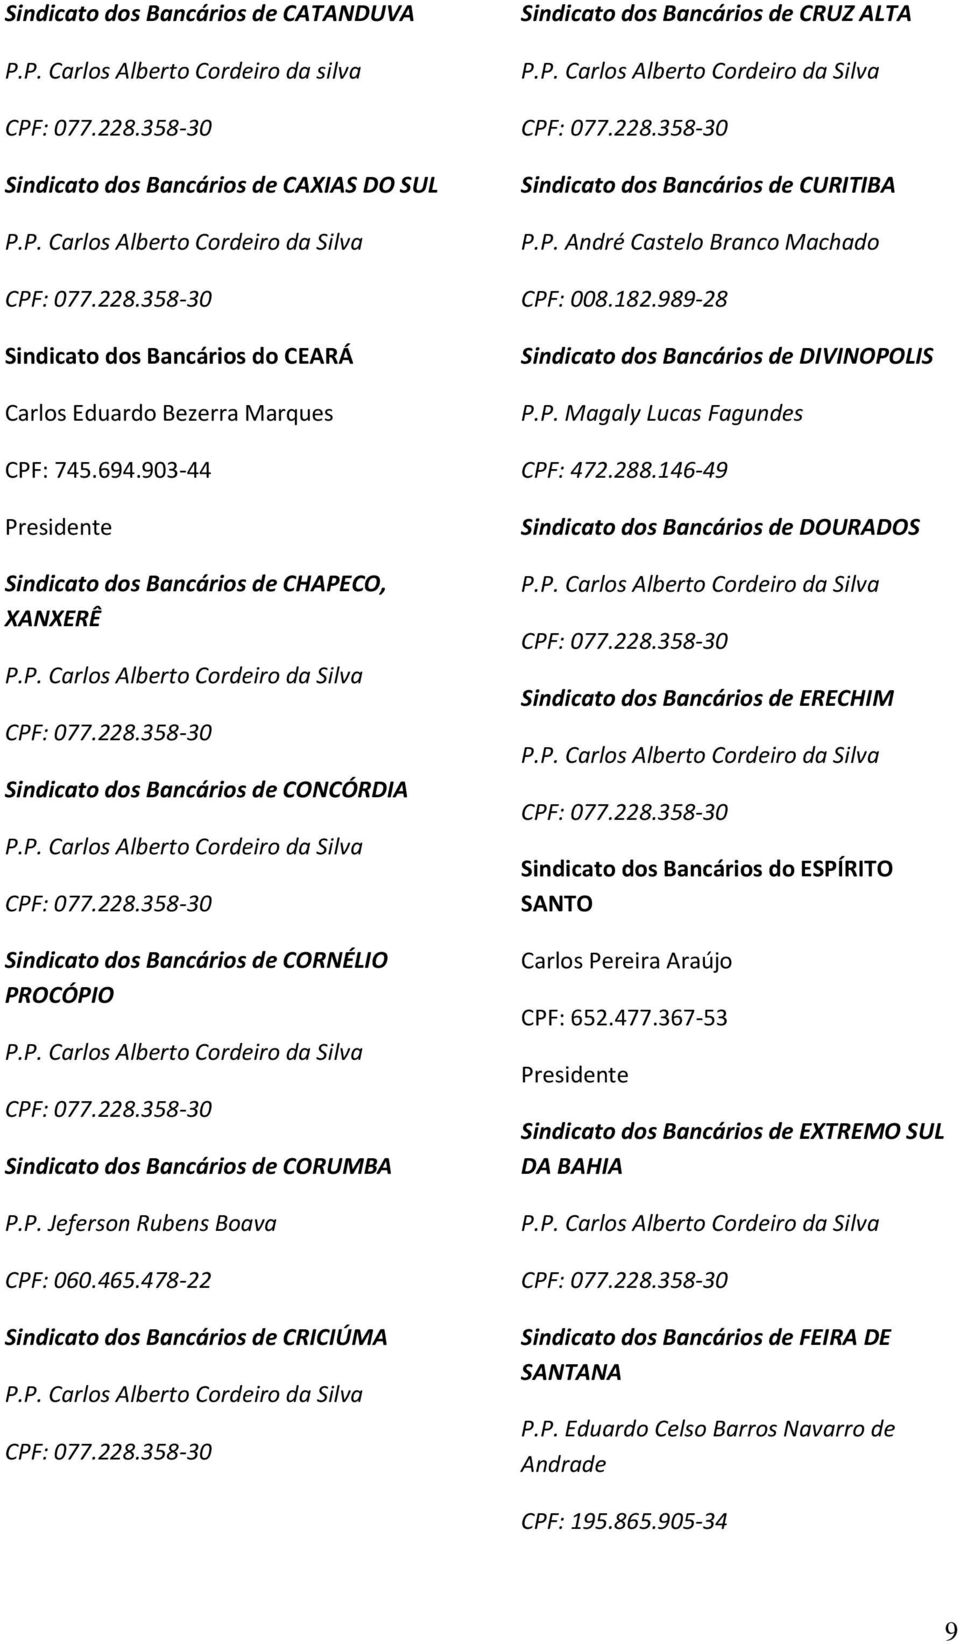 CRICIÚMA Sindicato dos Bancários de CRUZ ALTA Sindicato dos Bancários de CURITIBA P.P. André Castelo Branco Machado CPF: 008.182.989-28 Sindicato dos Bancários de DIVINOPOLIS P.P. Magaly Lucas Fagundes CPF: 472.